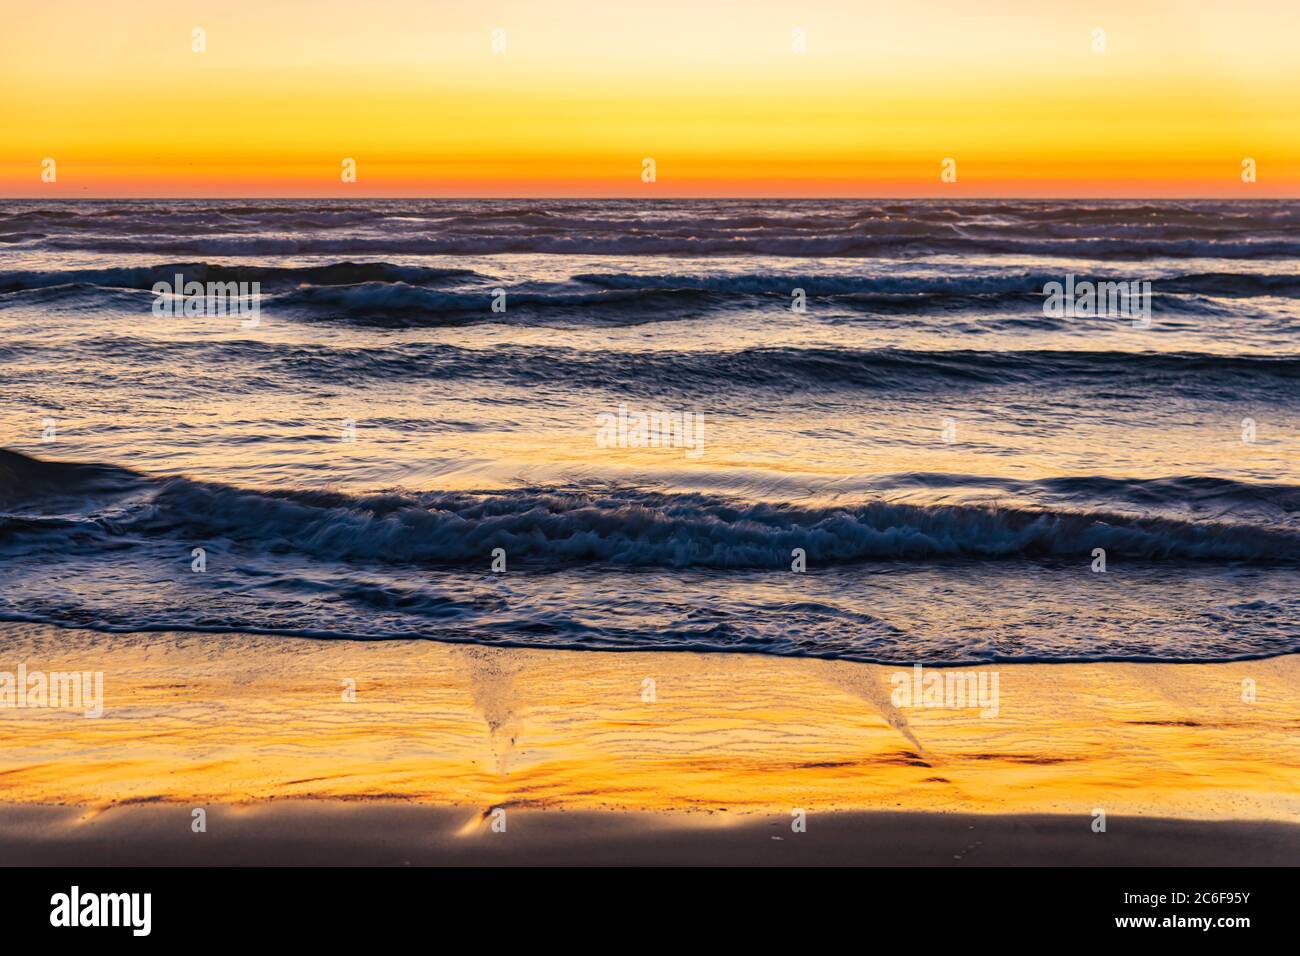 Der orange Sonnenuntergang leuchtet am Himmel und auf nassem Sand, wenn die Wellen am Cannon Beach in Oregon an Land gehen Stockfoto